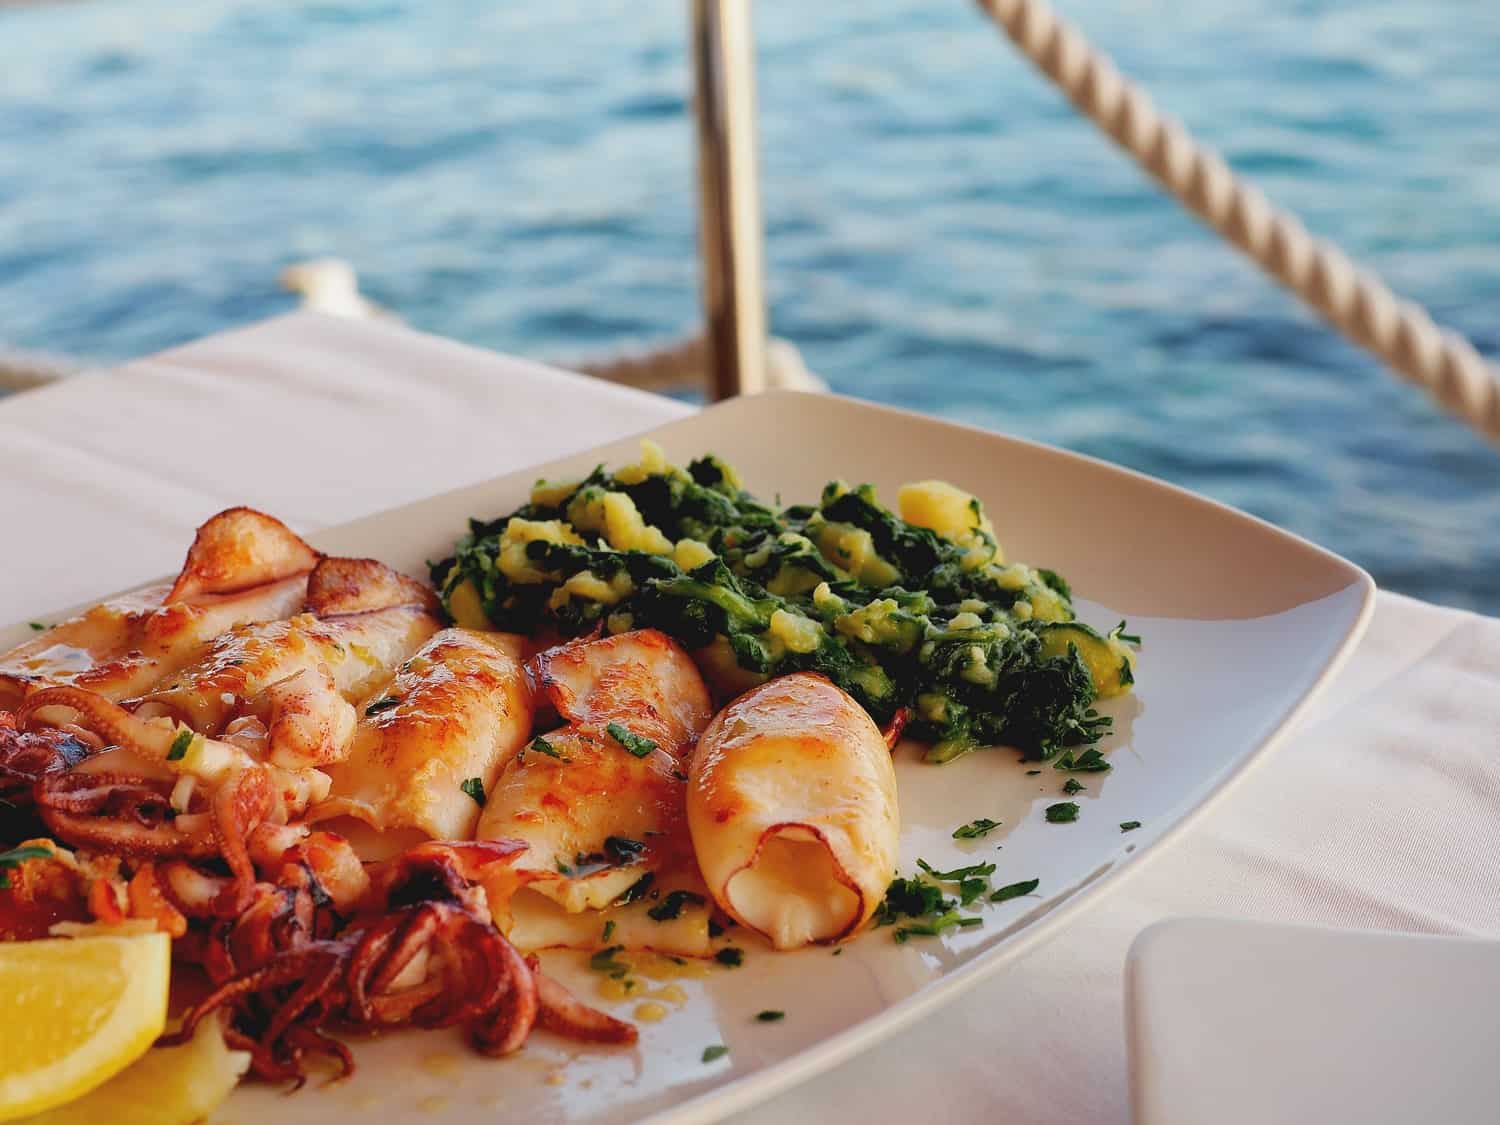 Seafood beside the ocean in Croatia